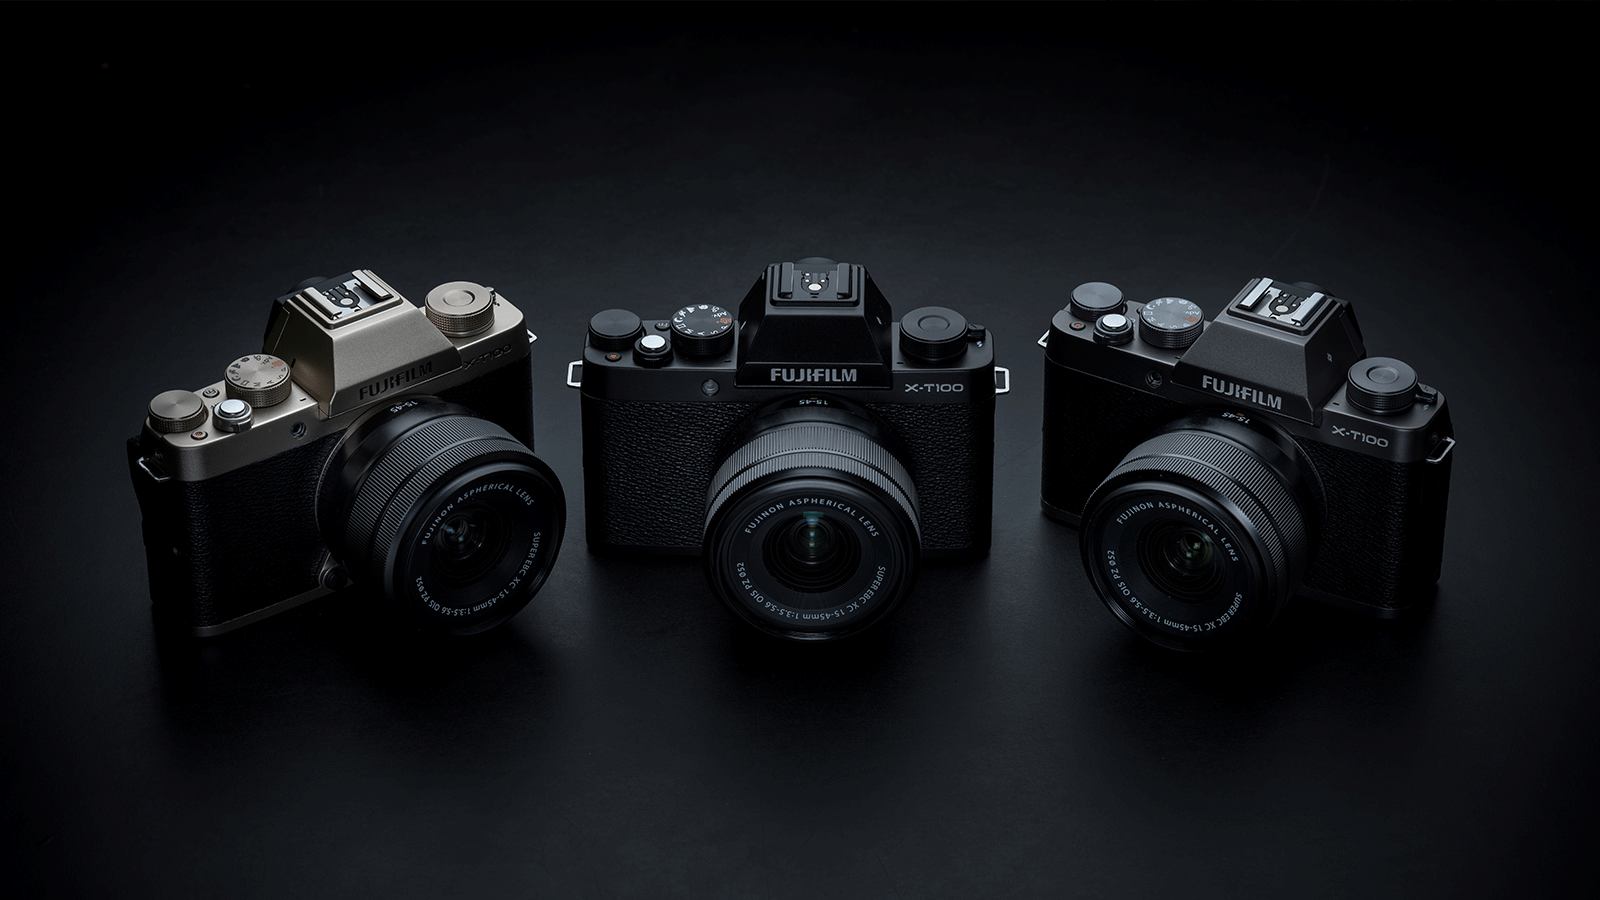 Three Fujifilm X-T100s side-by-side